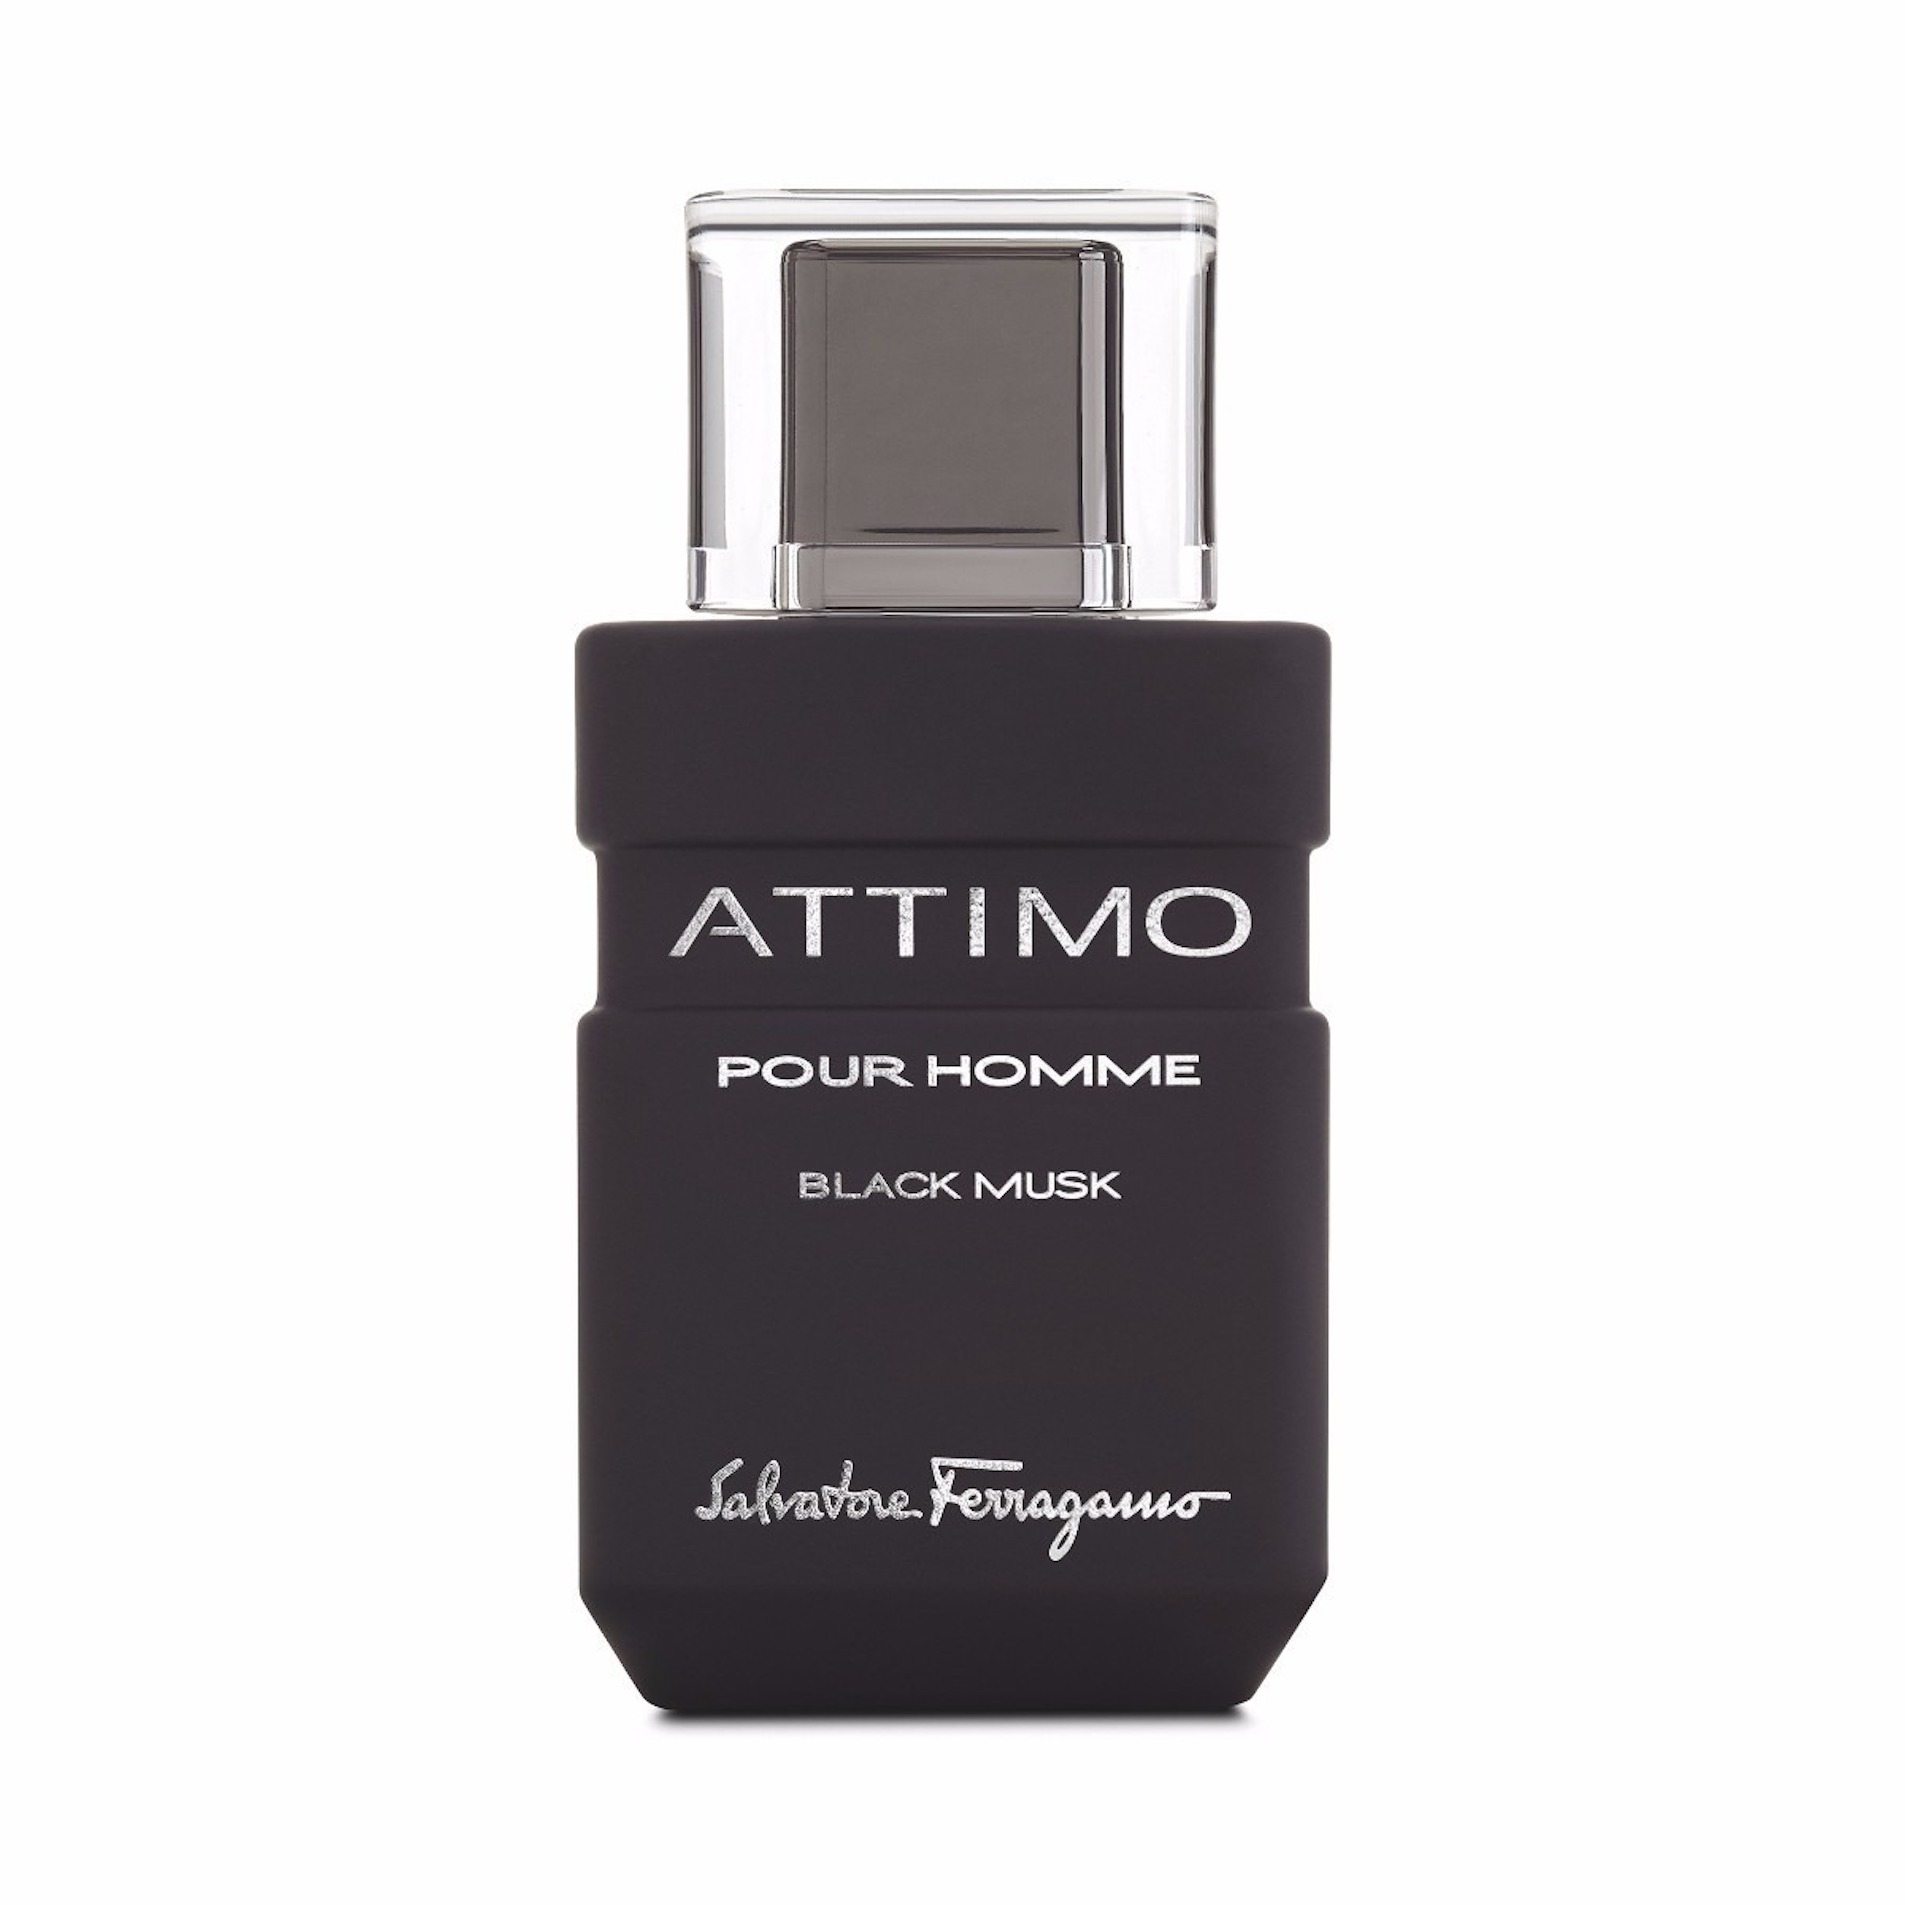 Bottle of Salvatore Ferragamo Attimo Black Musk